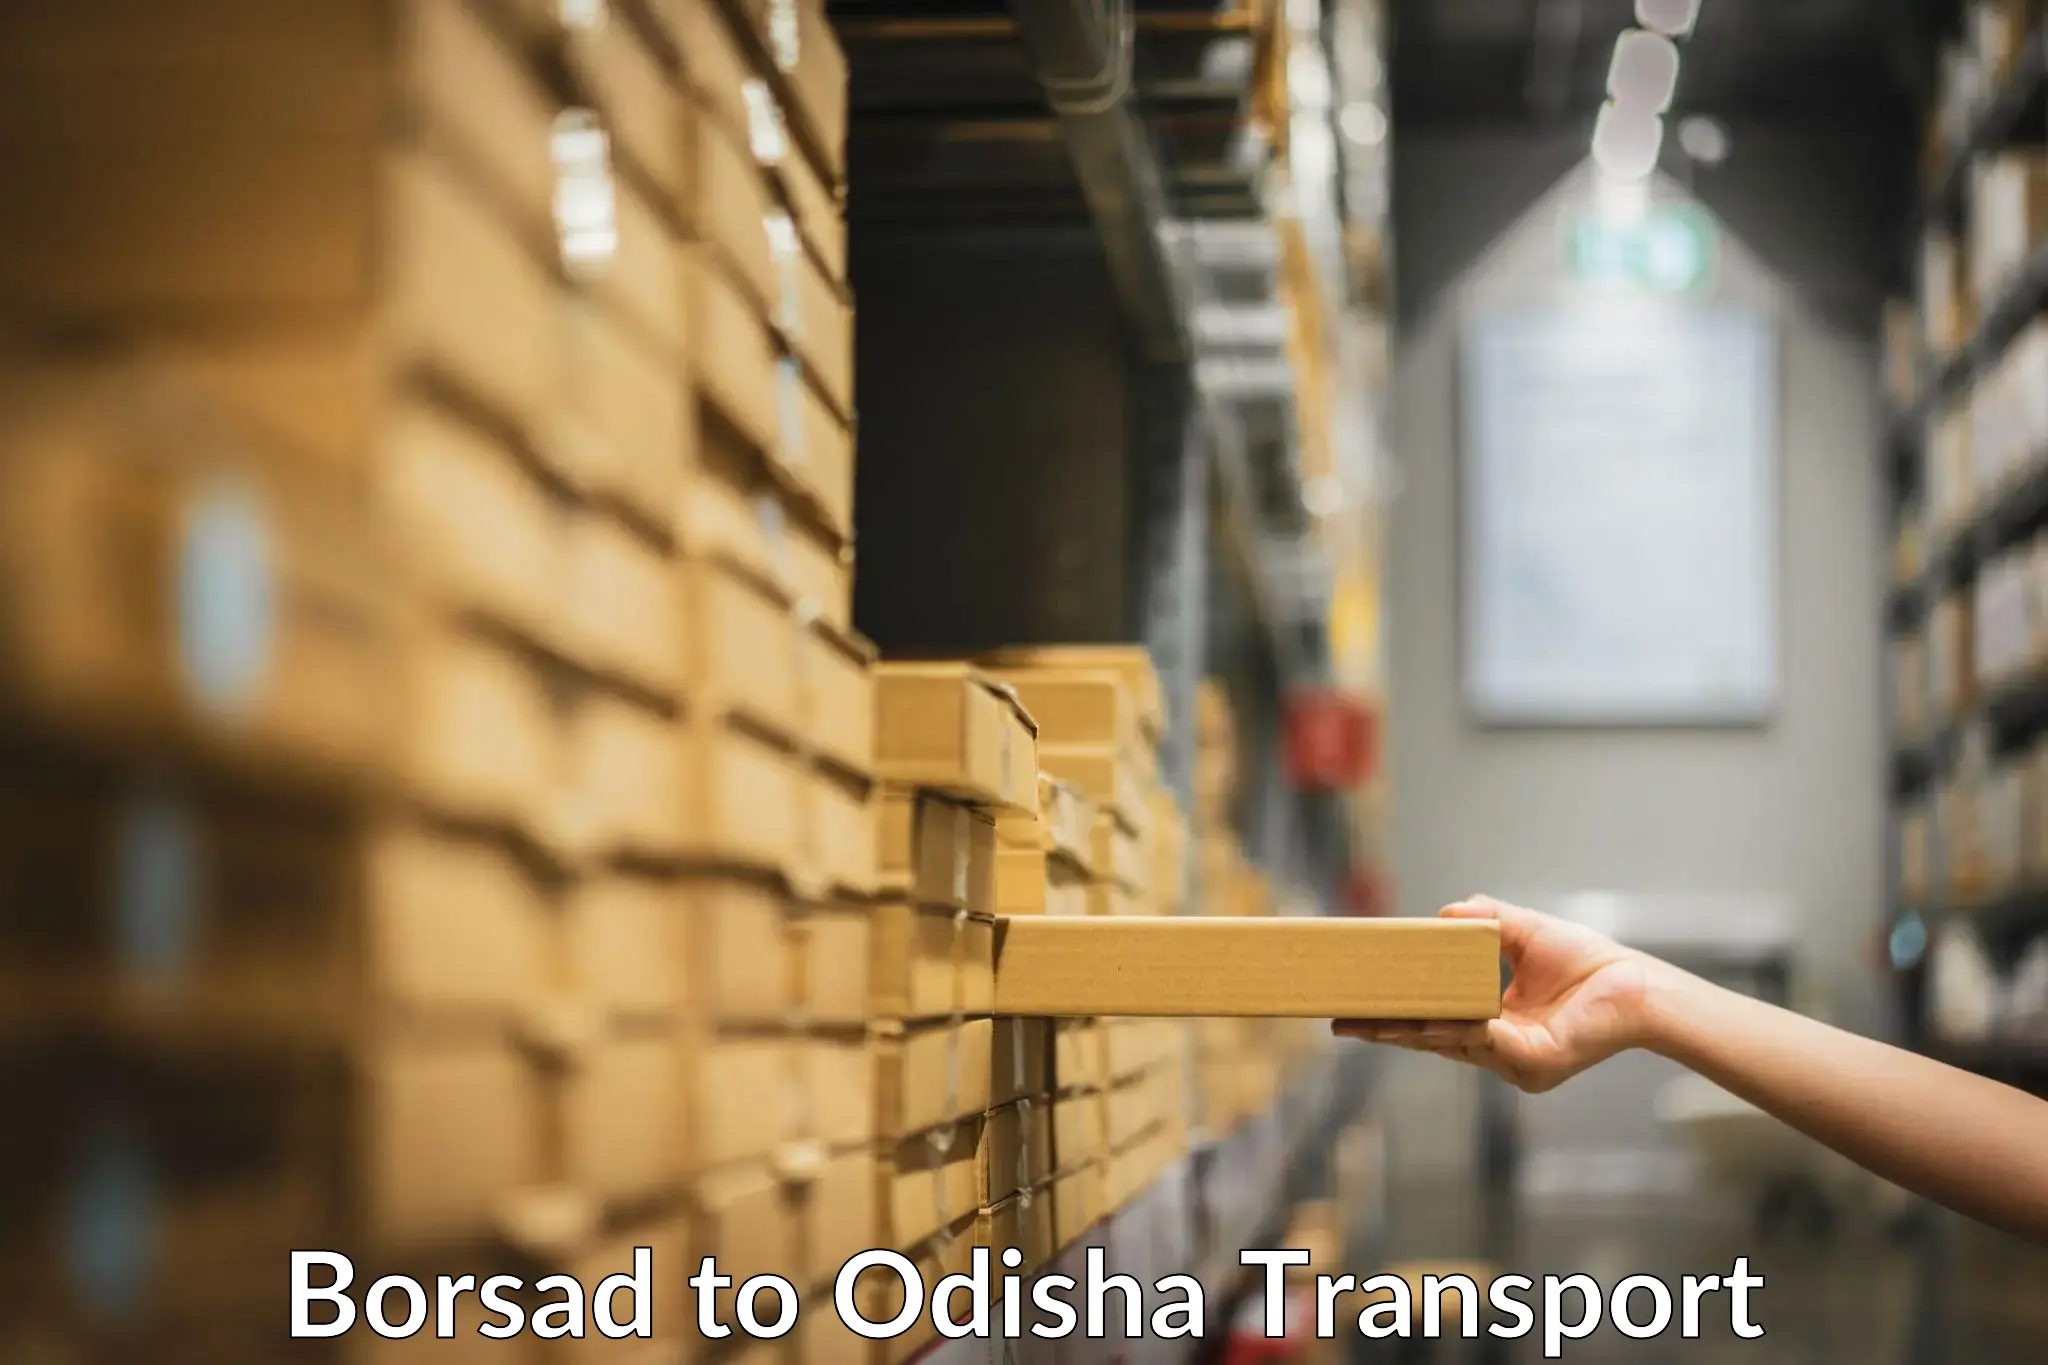 Furniture transport service Borsad to Odisha